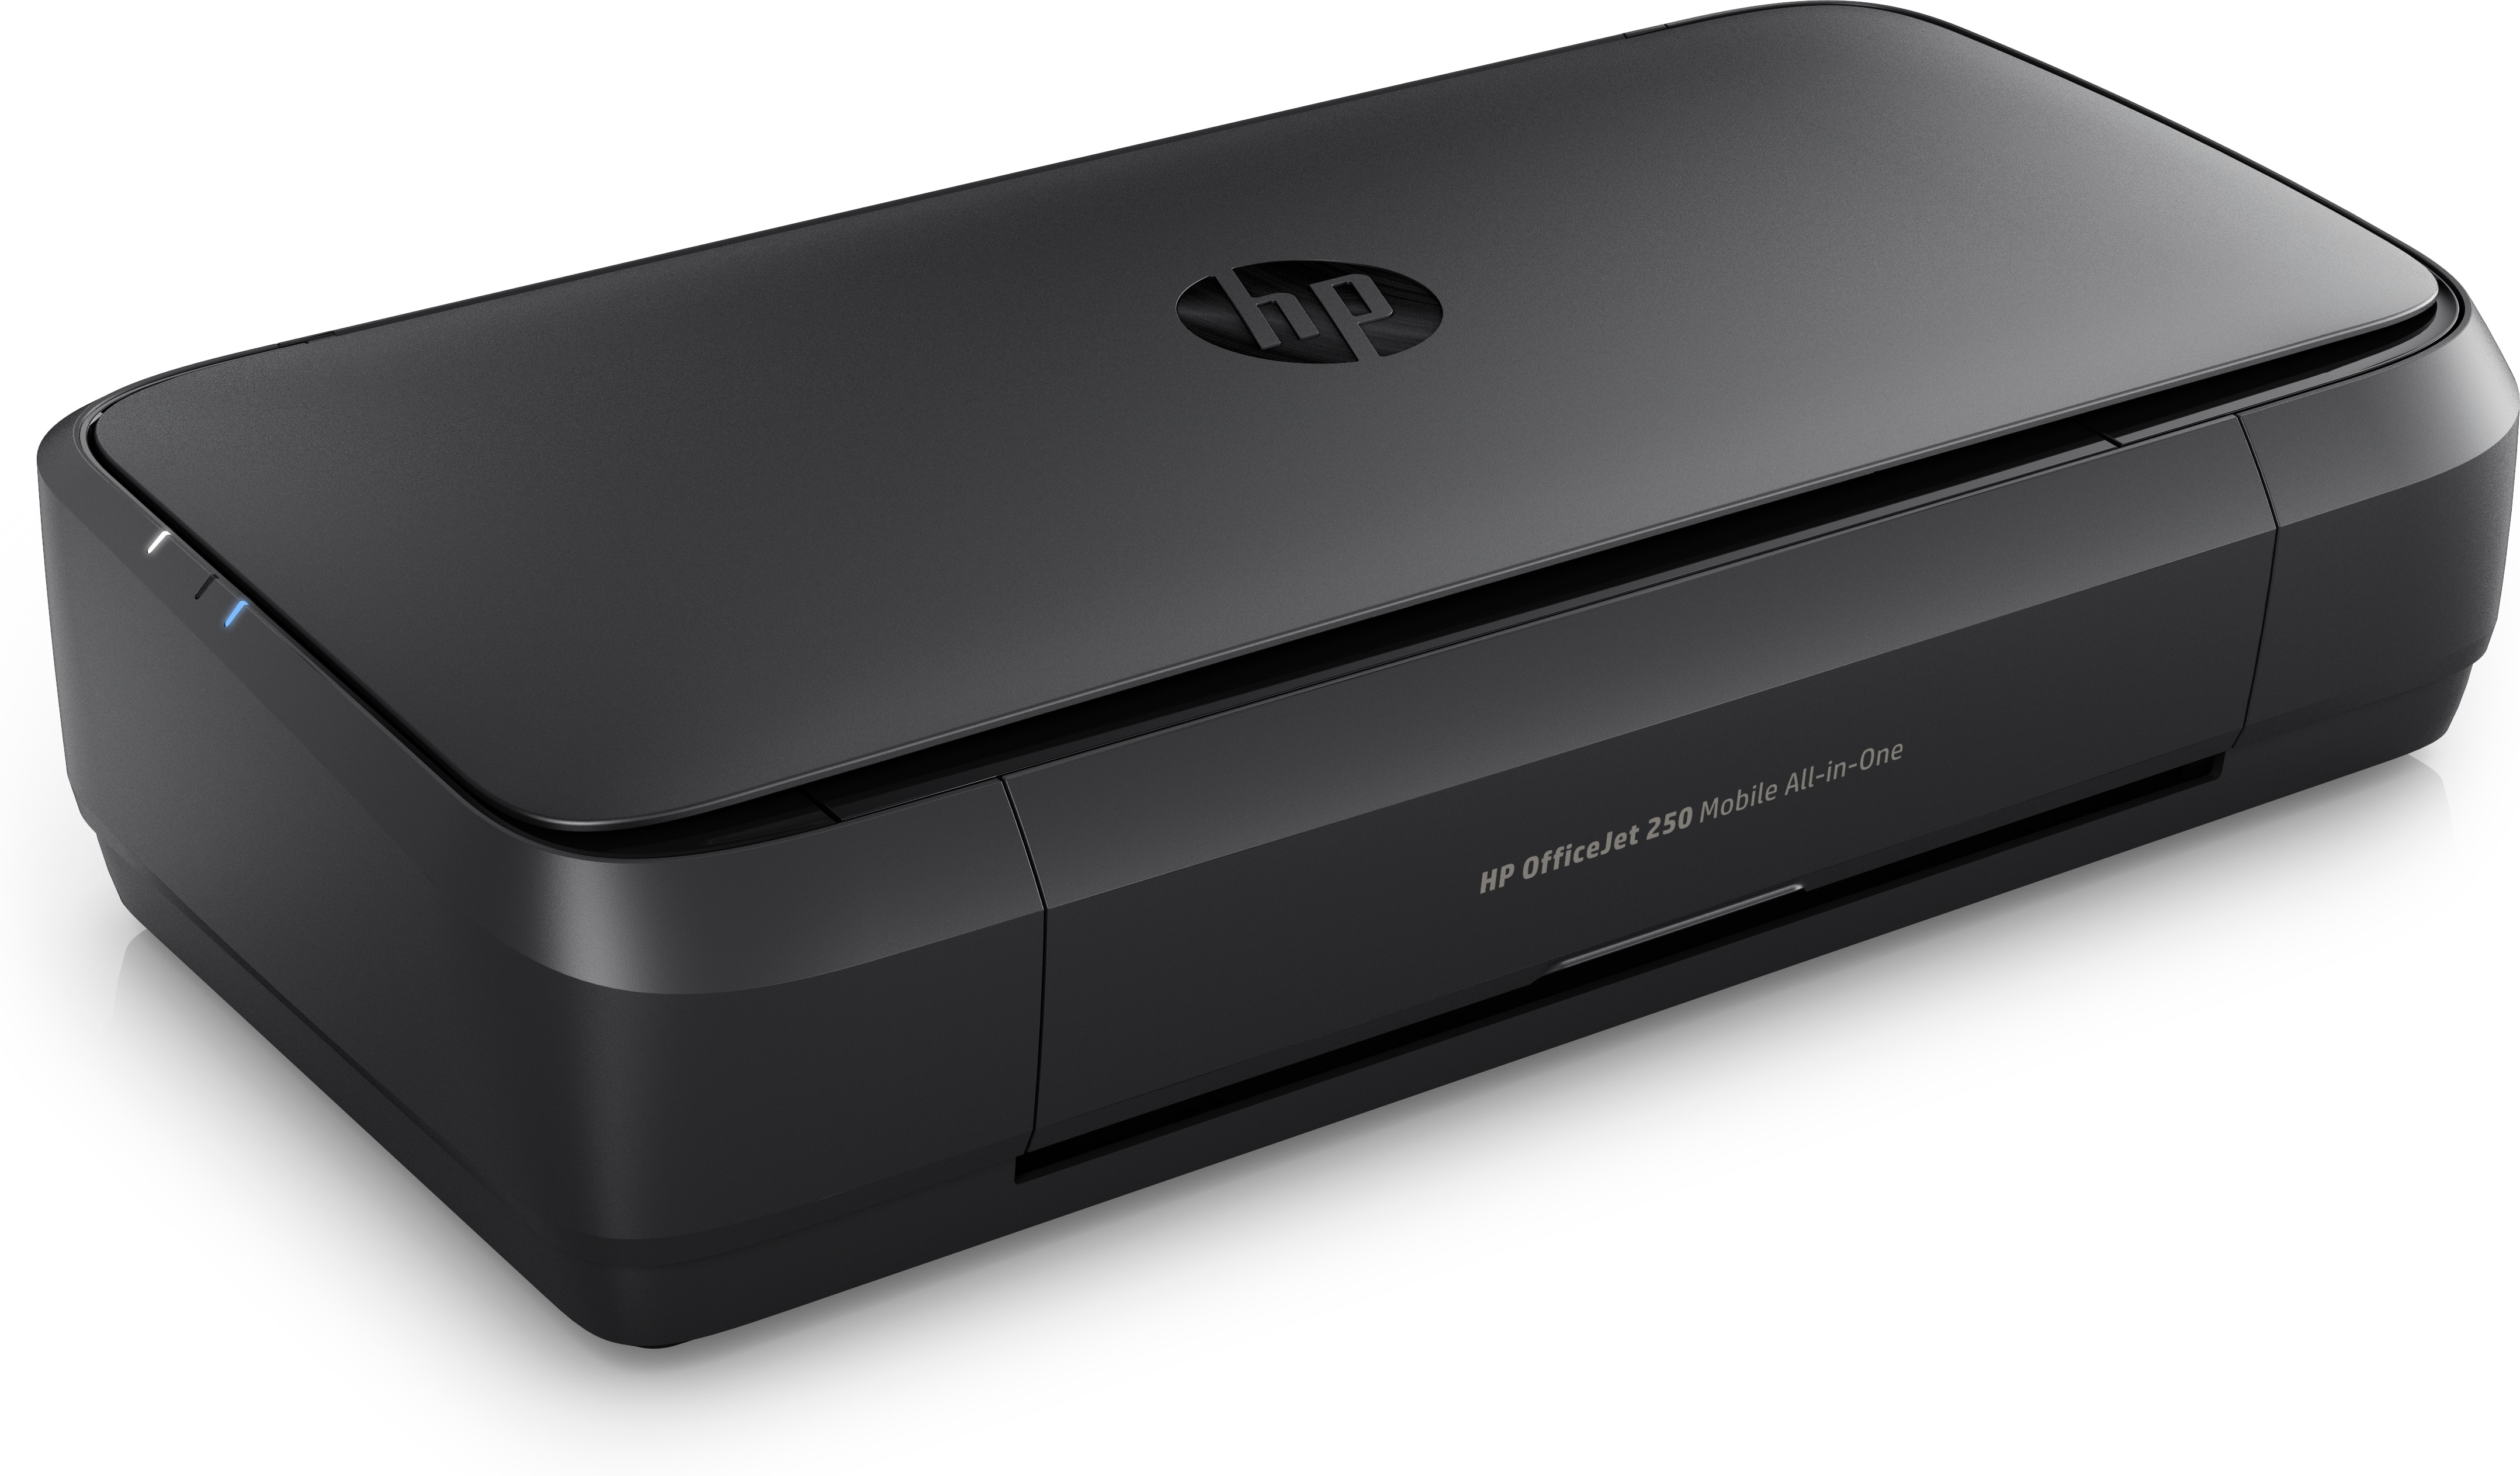 Multifunktionsdrucker HP Tintenstrahldruck WLAN OfficeJet 3-in-1 Mobil 250